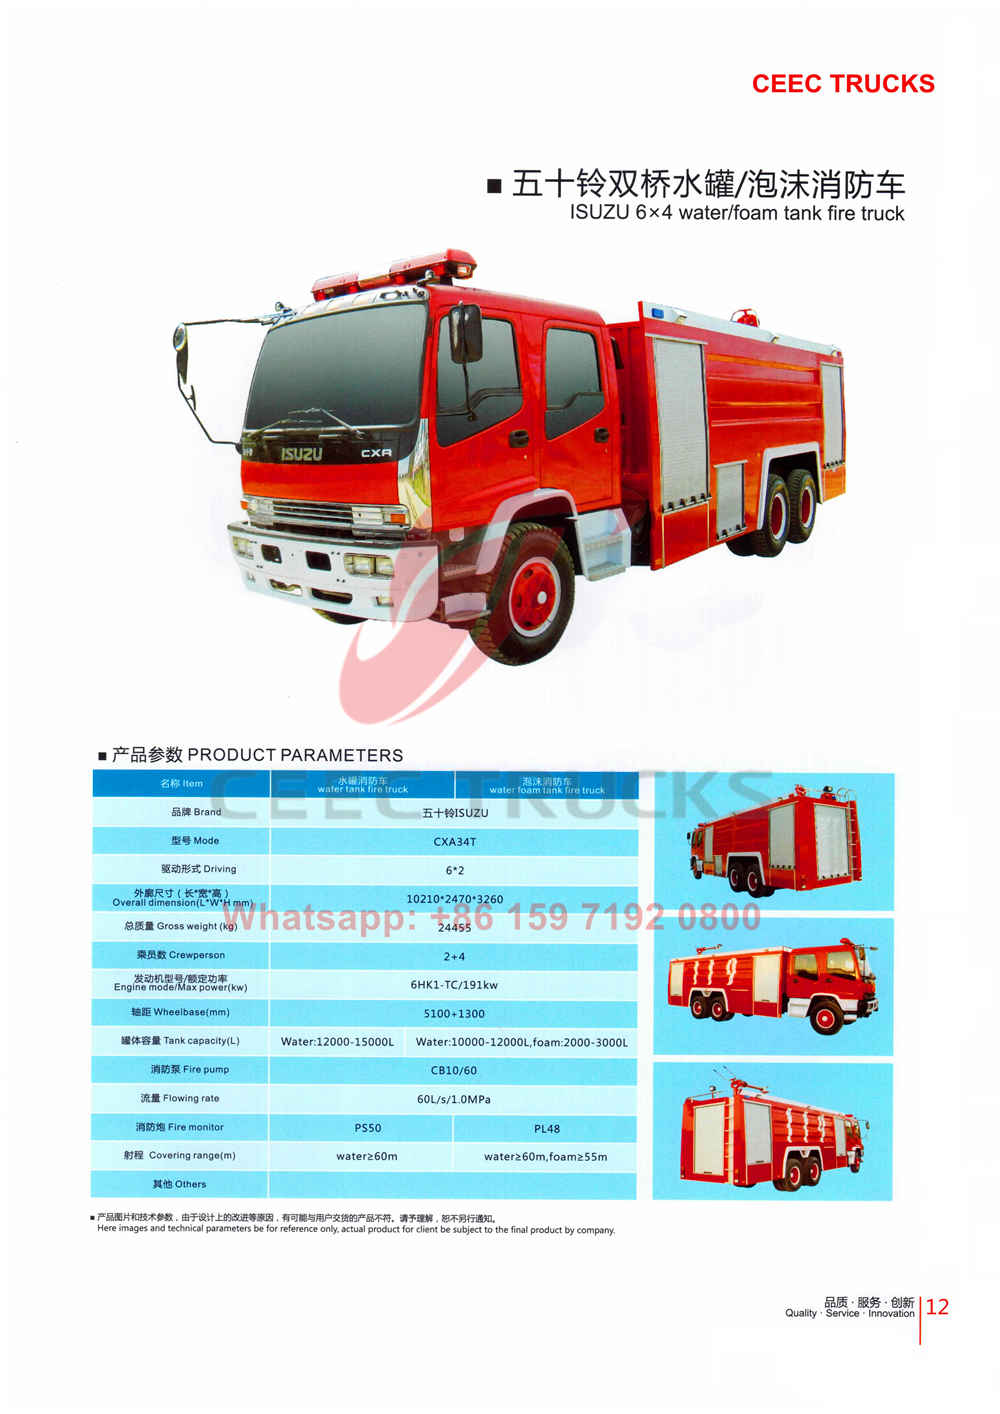 CEEC firefighting truck catalogue